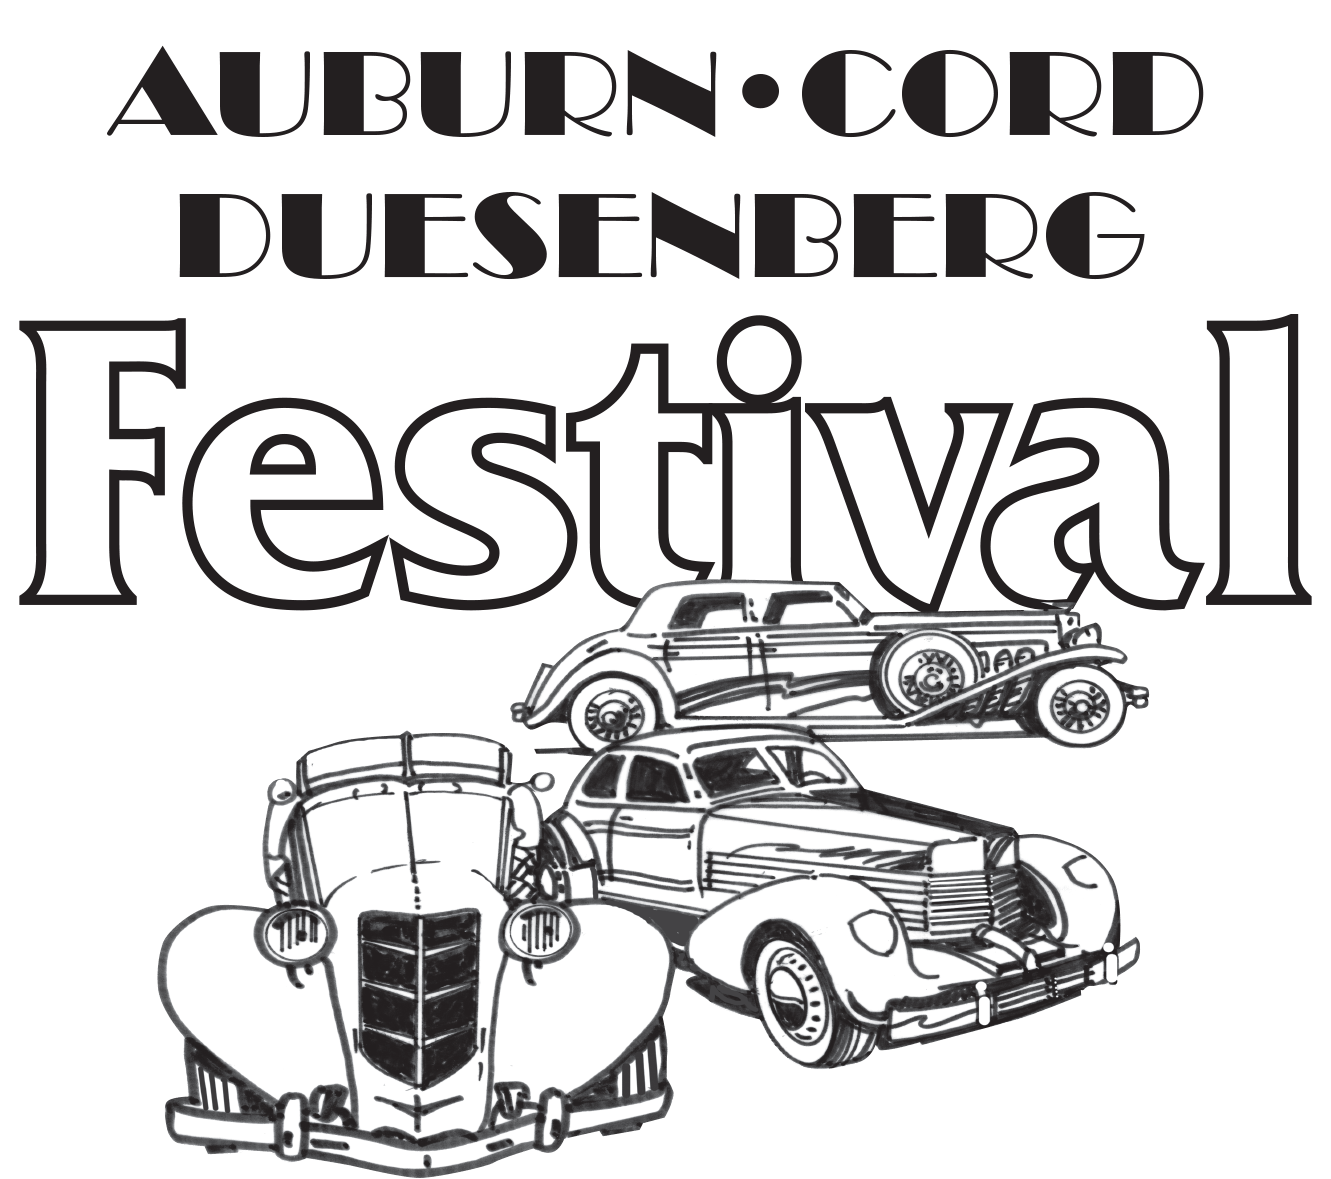 Duesenberg Logo - Home, Cord, Duesenberg Festival